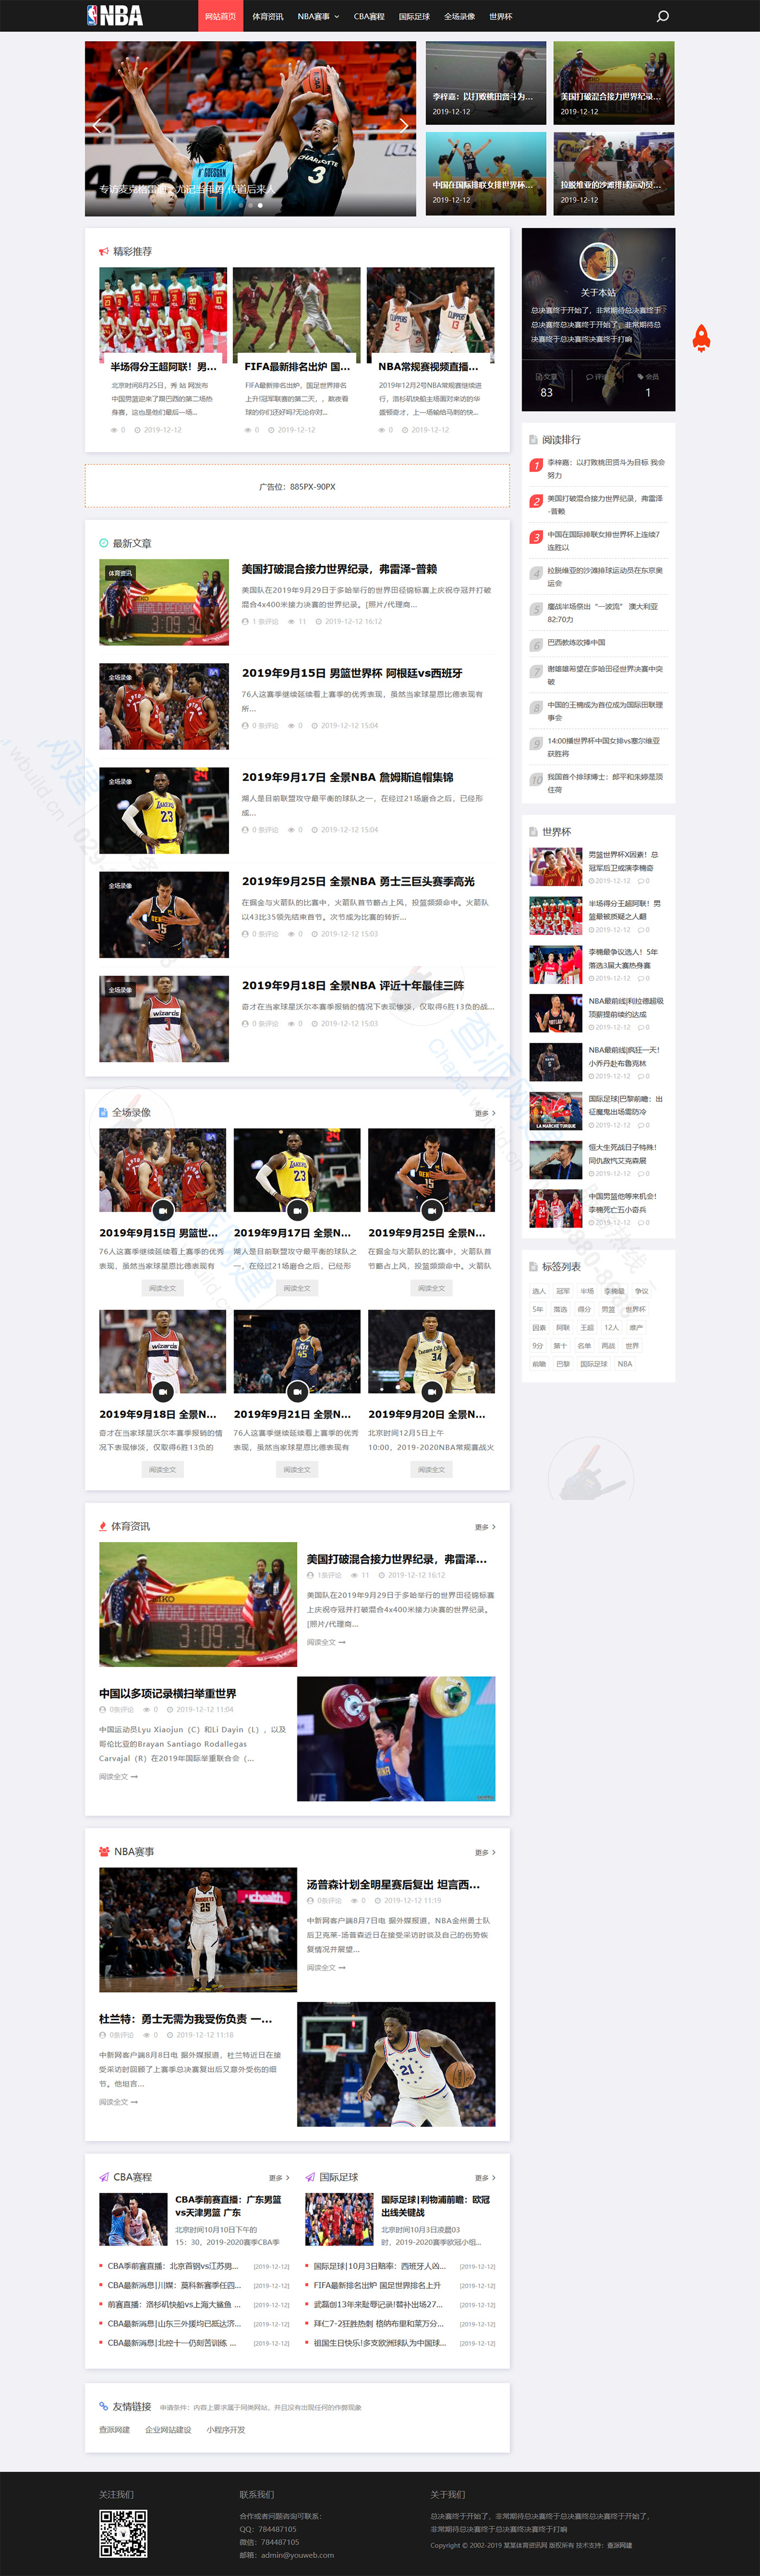 响应式NBA体育赛事资讯类网站建设模板(自适应手机端)